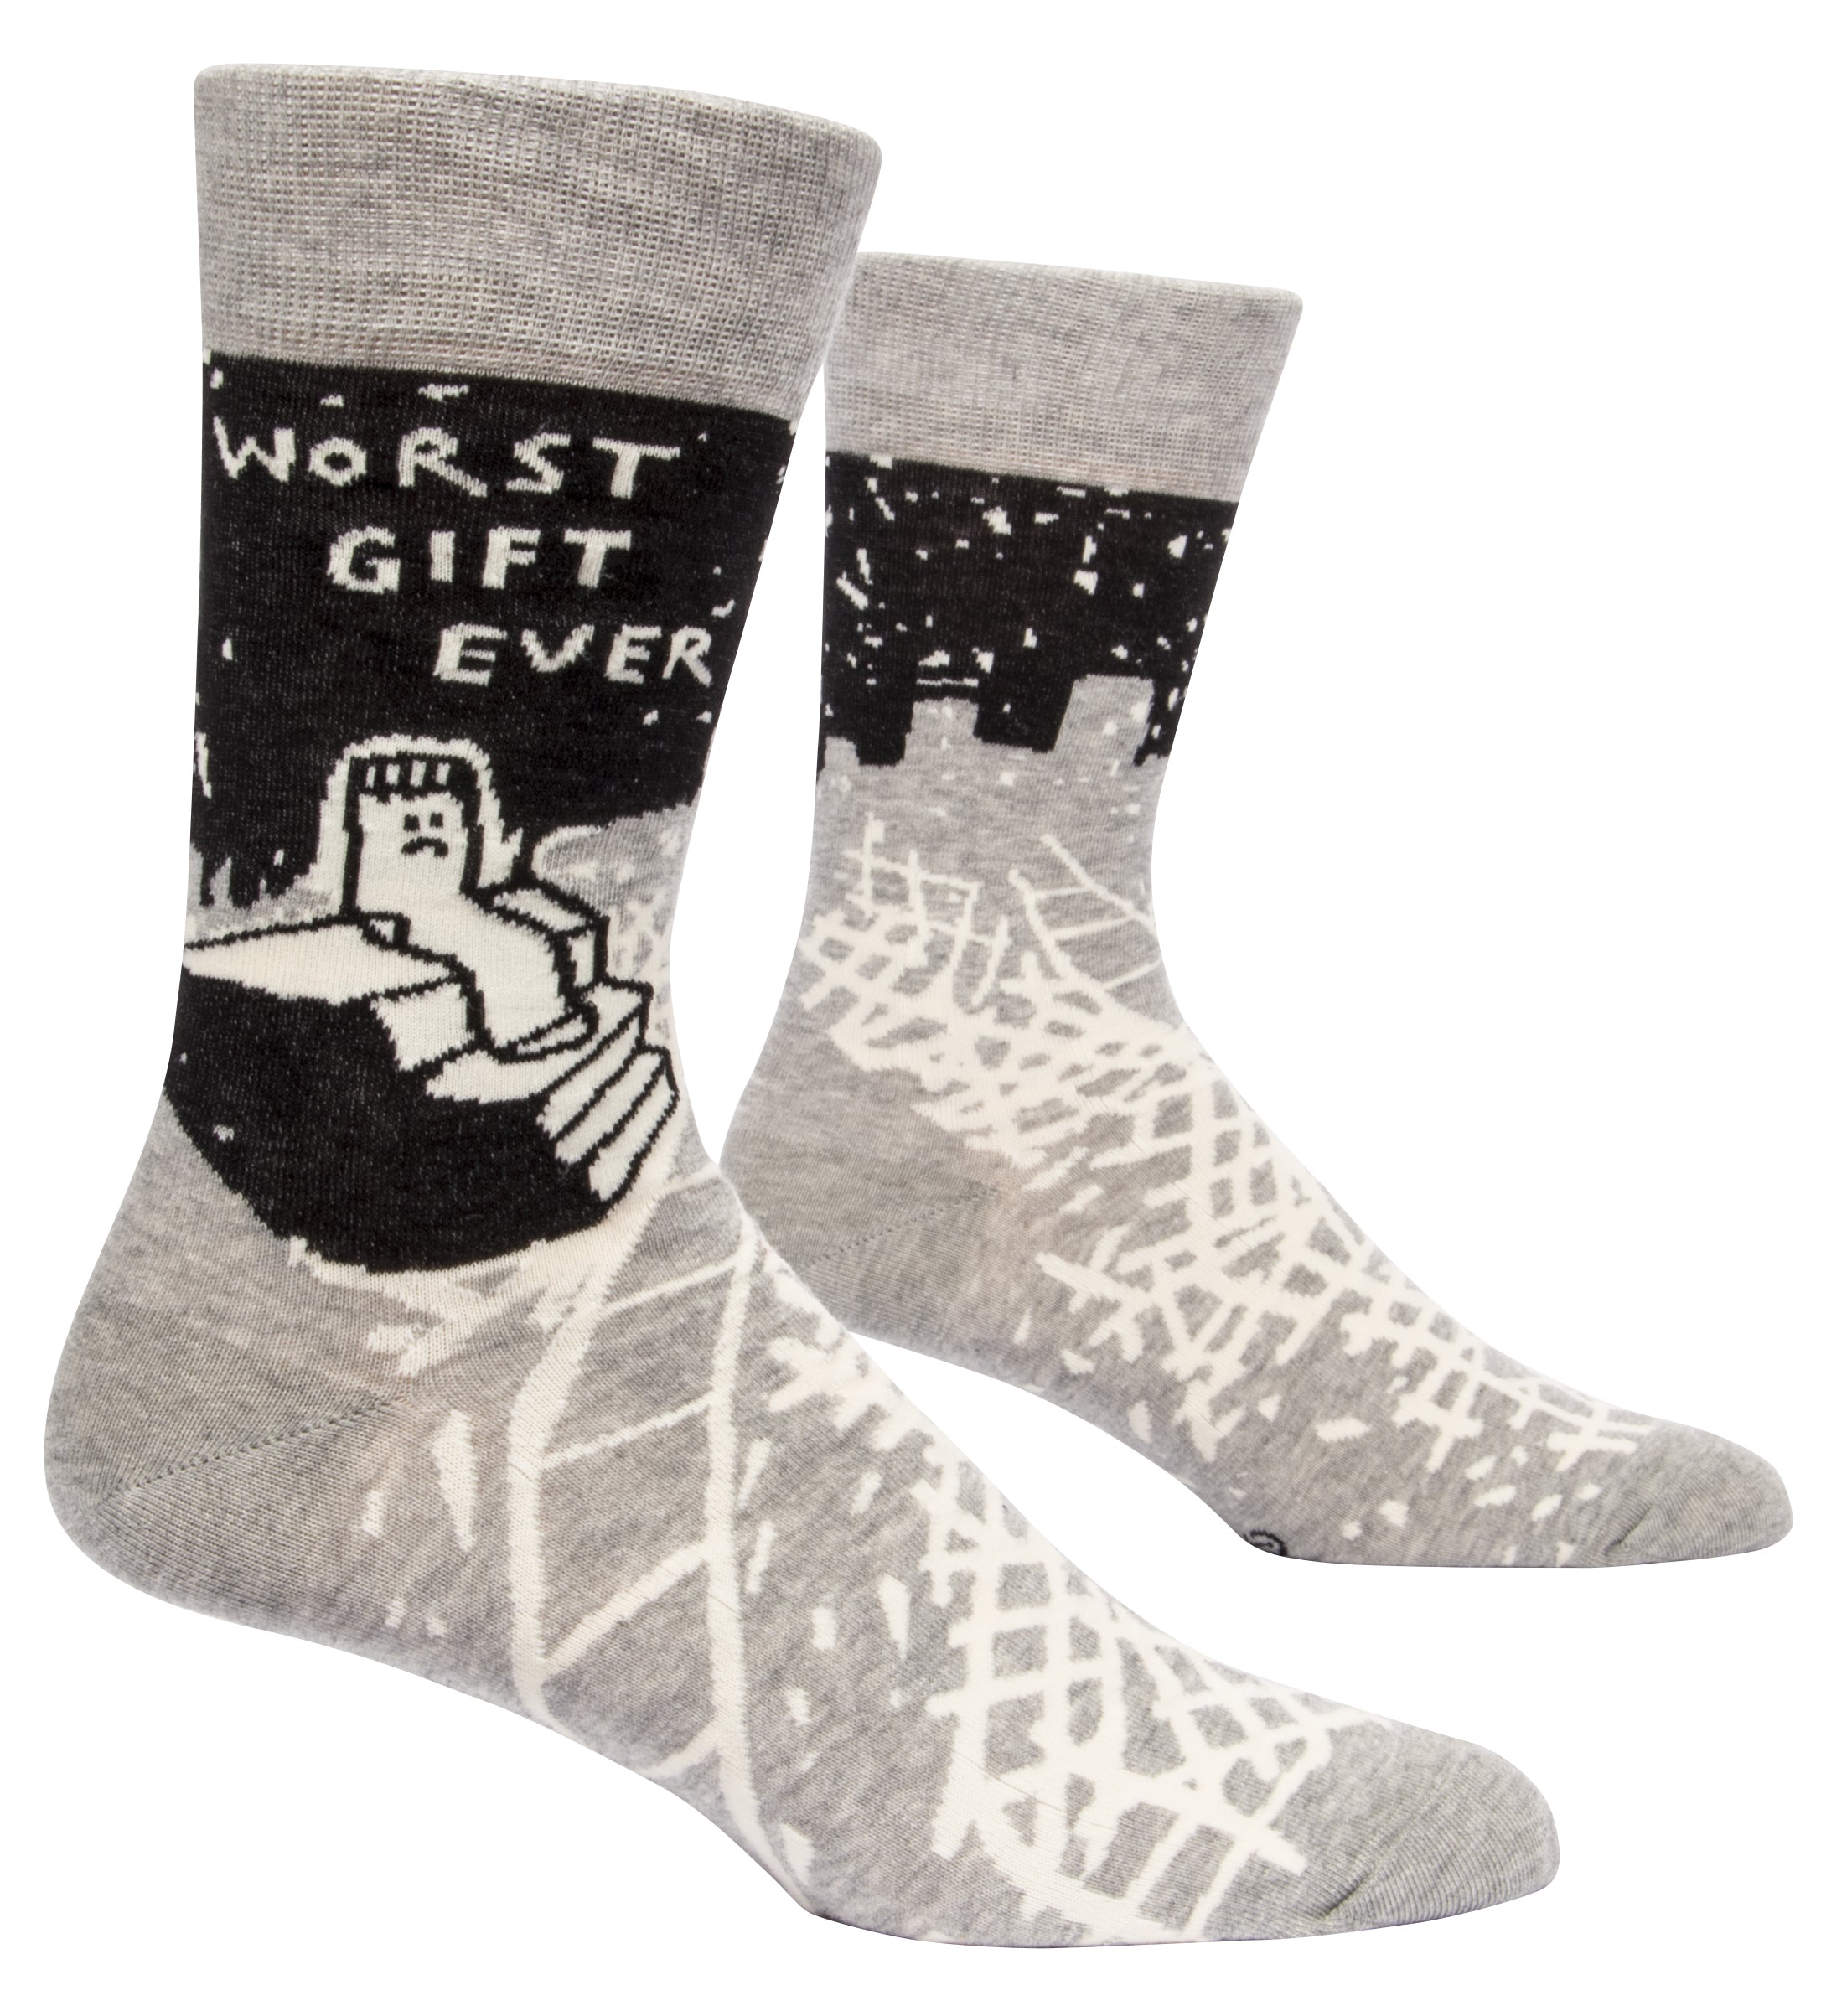 Socks Men: Worst Gift Ever